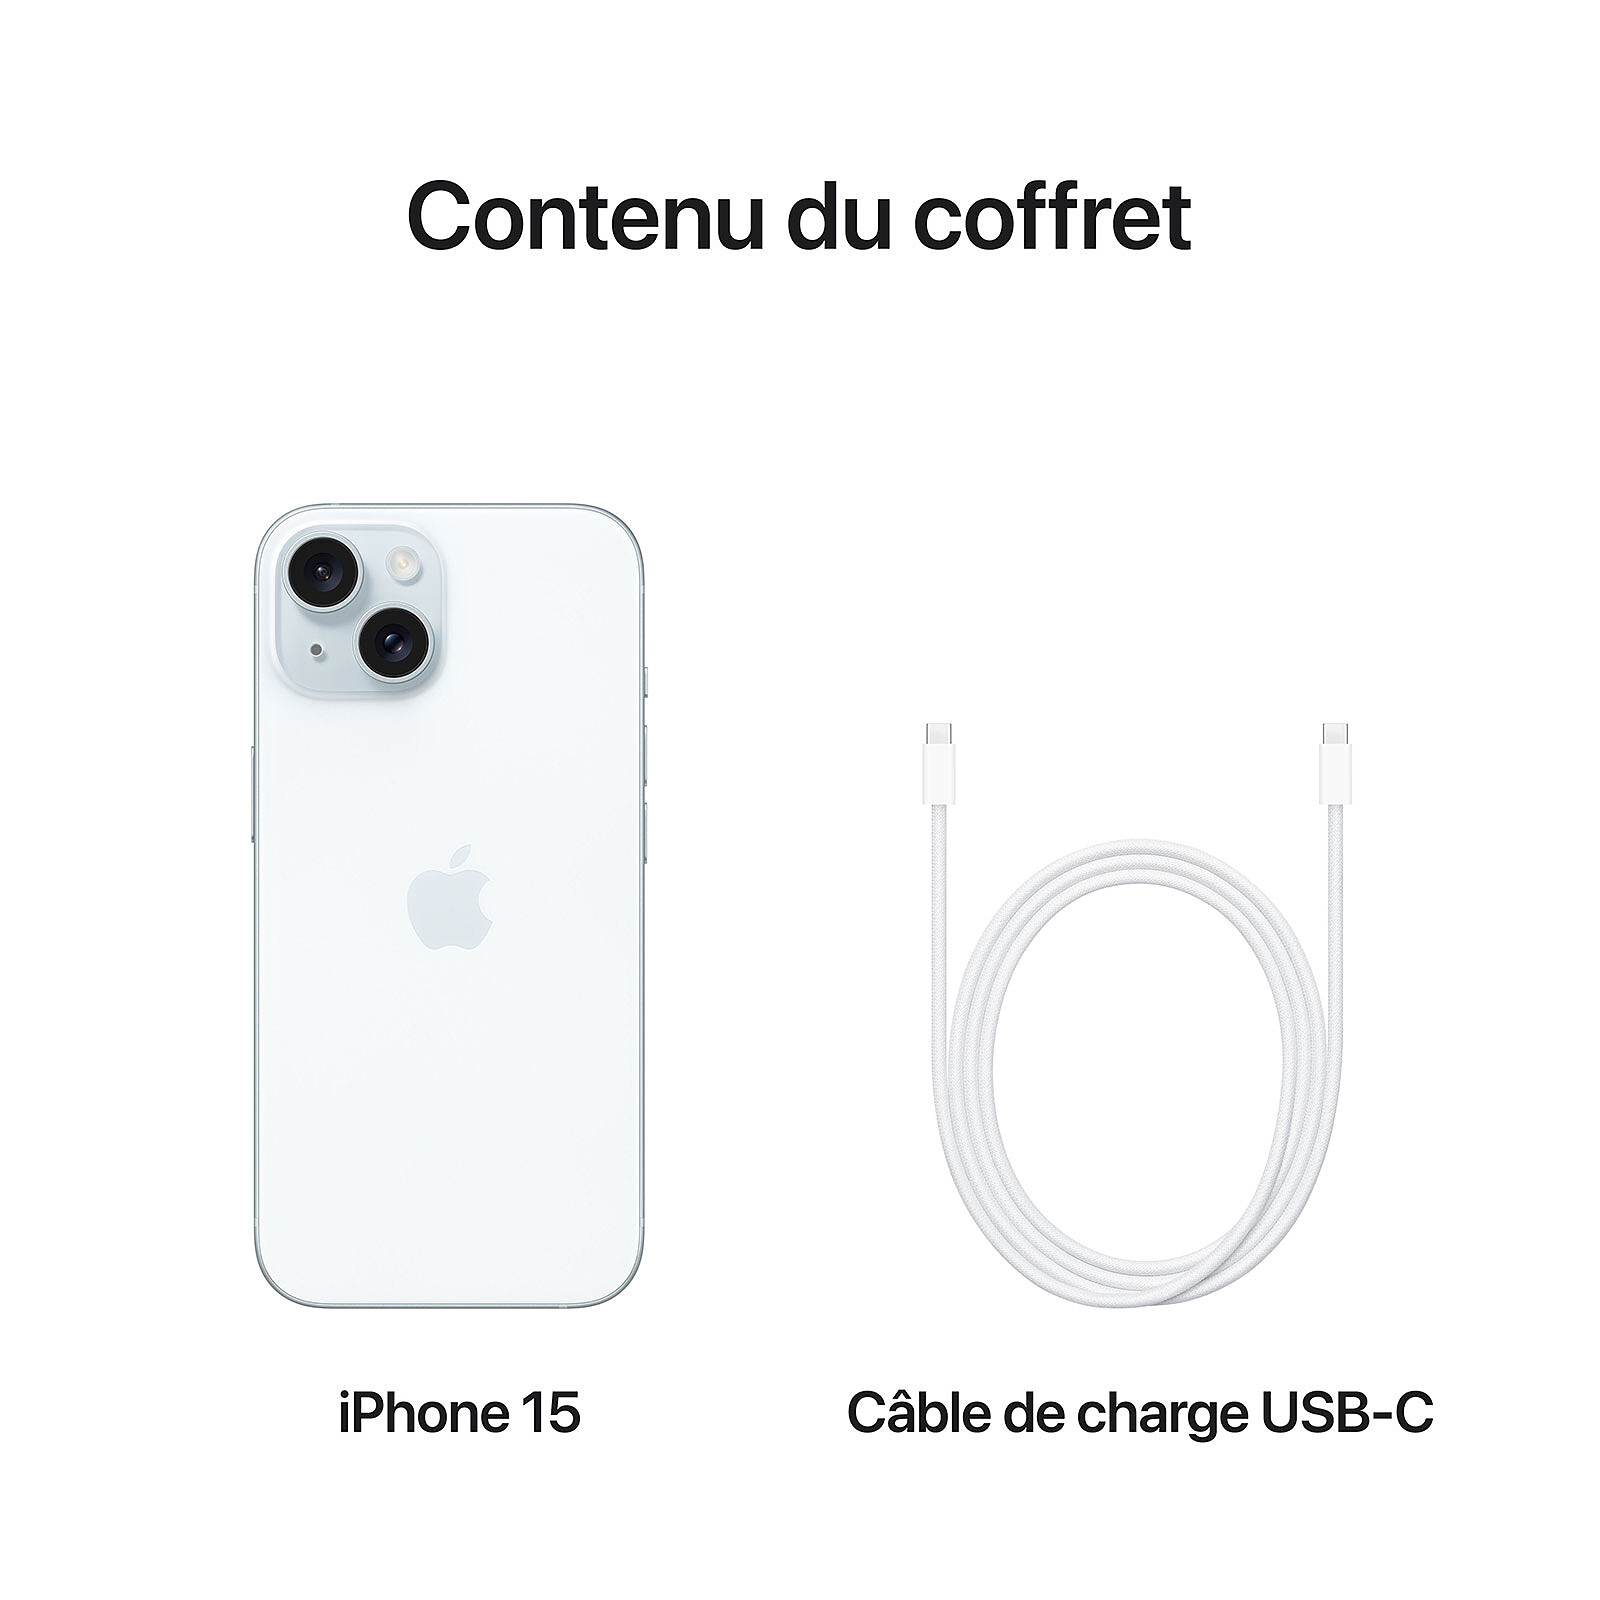 Grâce à l'USB-C, on peut transférer le contenu d'un iPhone 15 à l